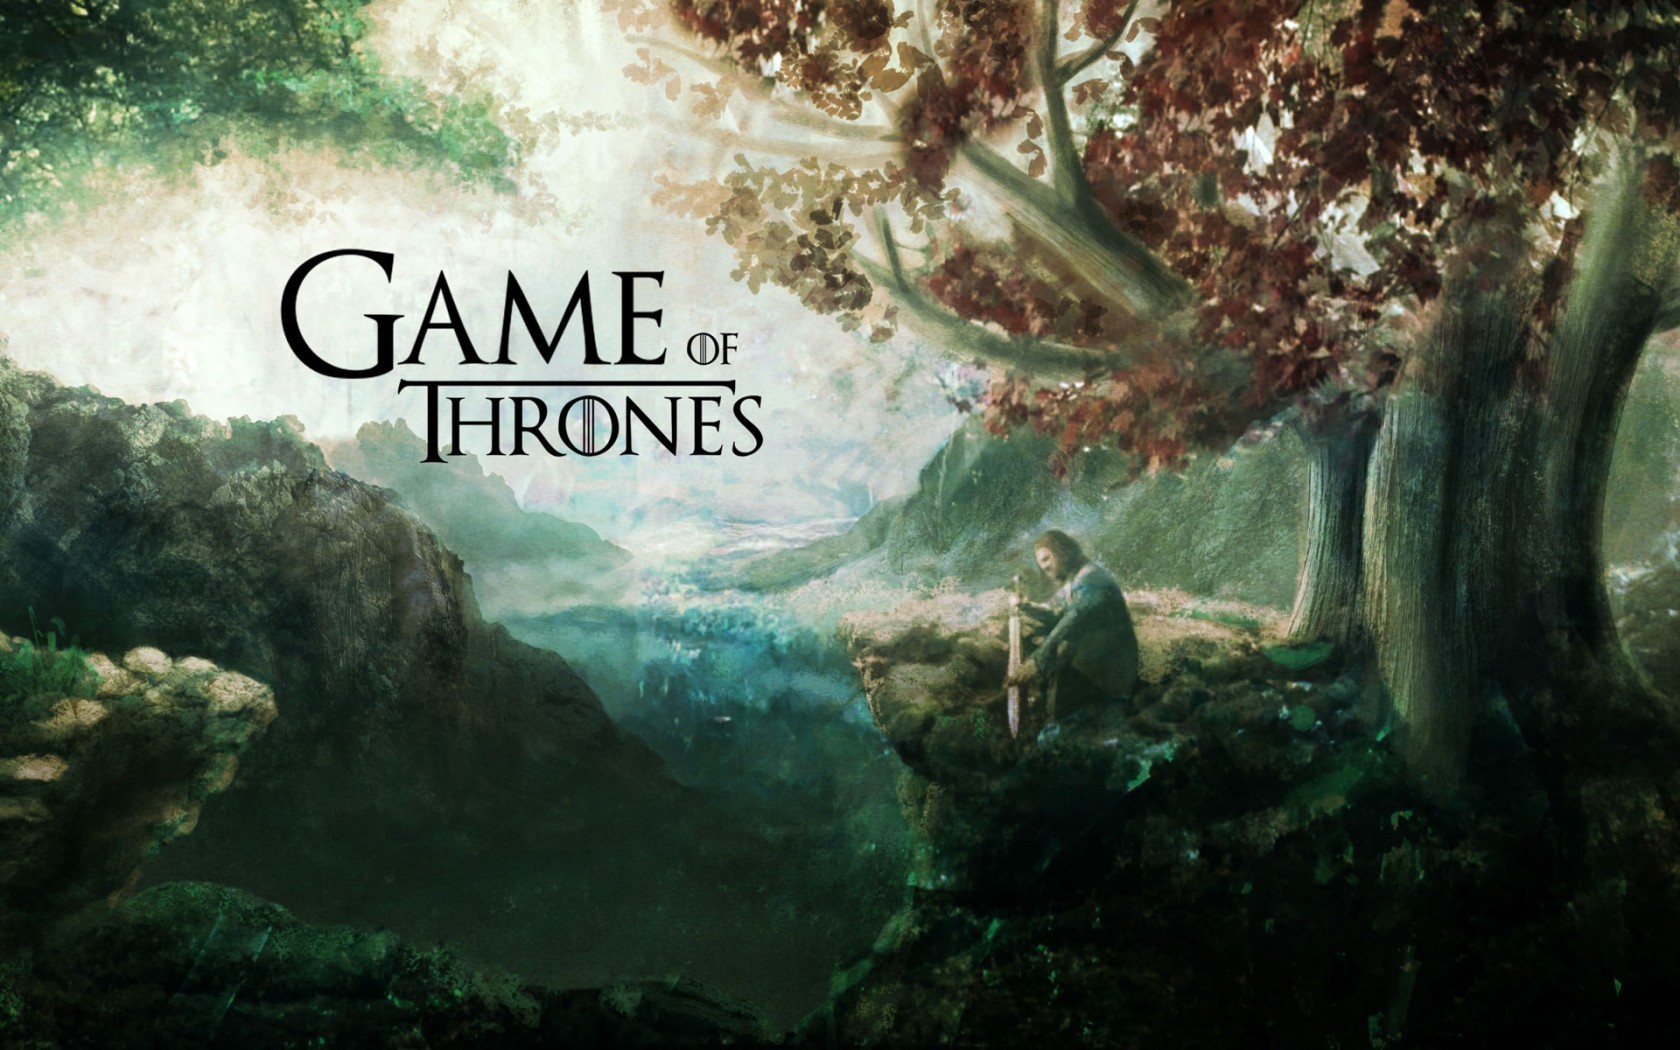 Bạn đang tìm kiếm bộ sưu tập ảnh nền Game of Thrones HD chất lượng cao để thay đổi cho màn hình máy tính hay điện thoại của mình? Đến với chúng tôi, bạn sẽ được tải và sử dụng miễn phí hàng loạt hình nền tuyệt đẹp nhất về series này. Nhấn vào ảnh để truy cập ngay!